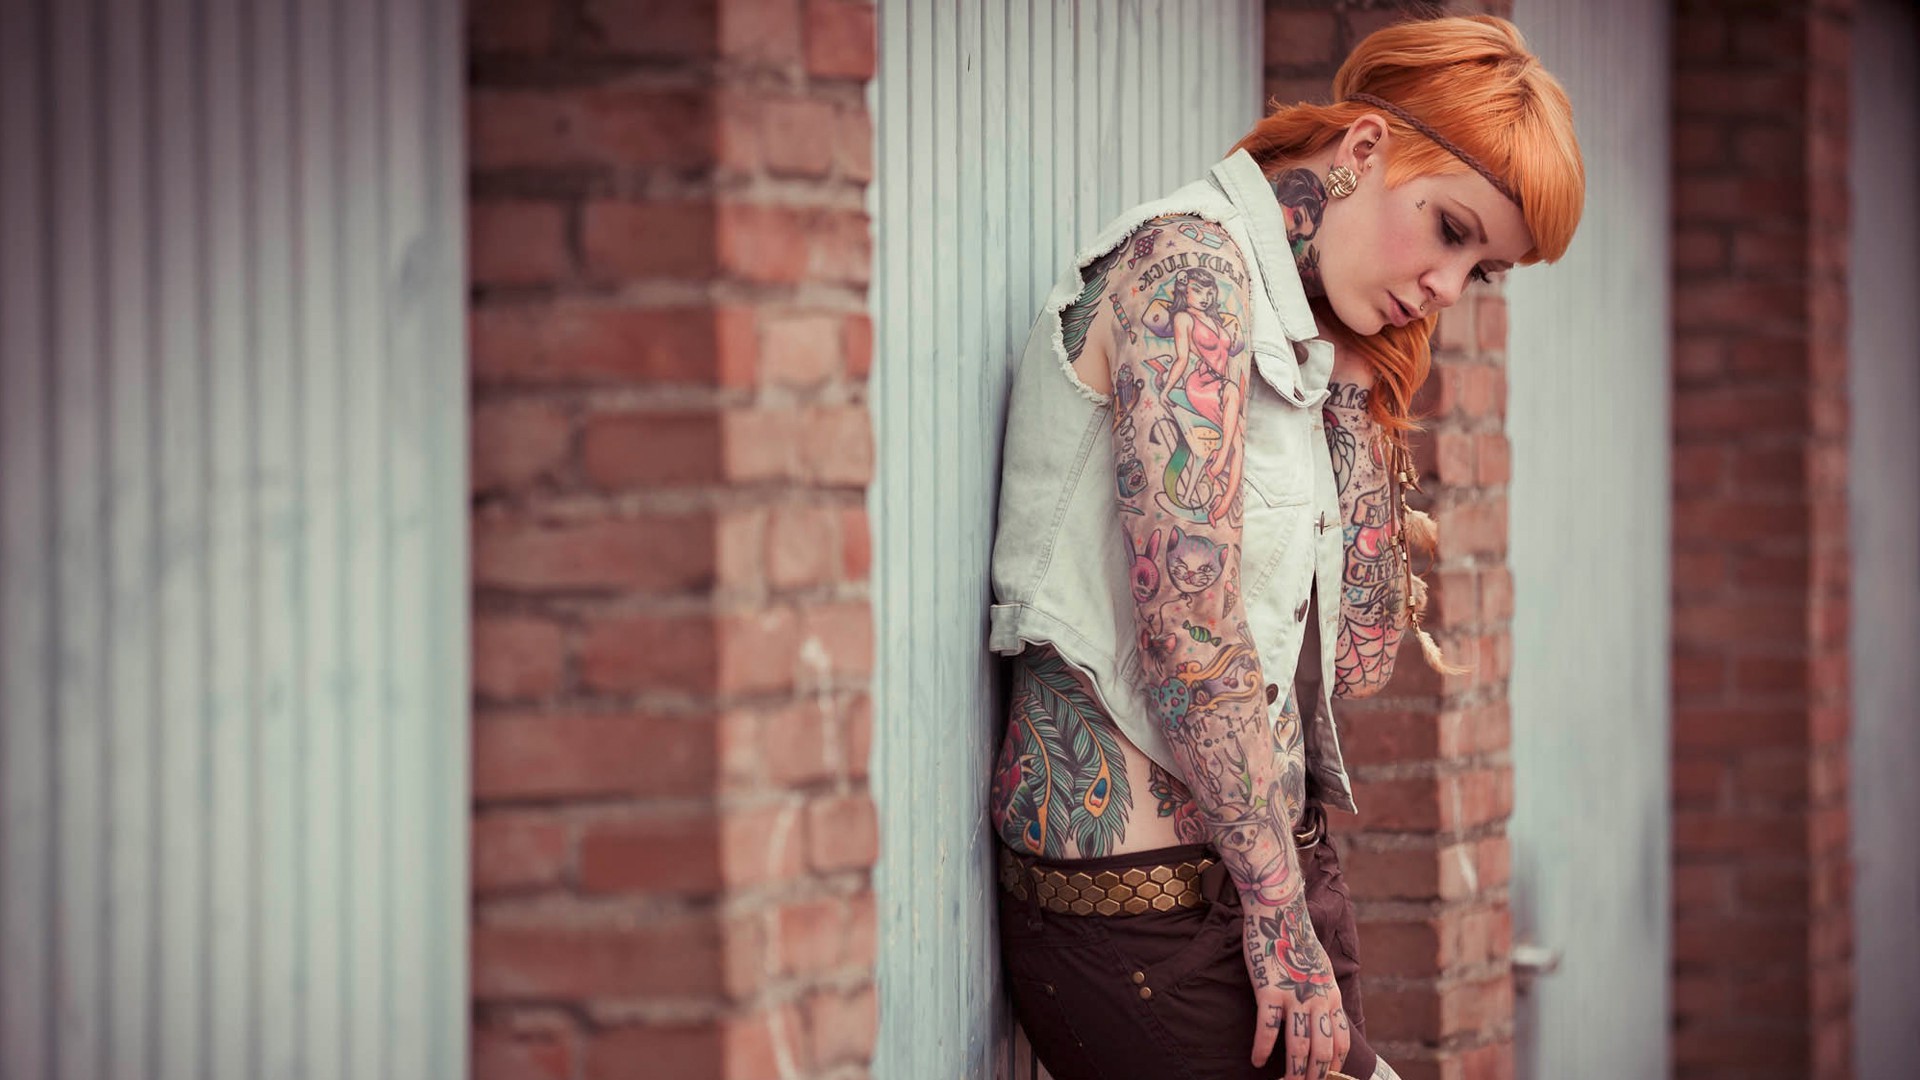 Women Long Hair Model Tattoo Redhead Headband Jeans Piercing Garages Women Outdoors 1920x1080